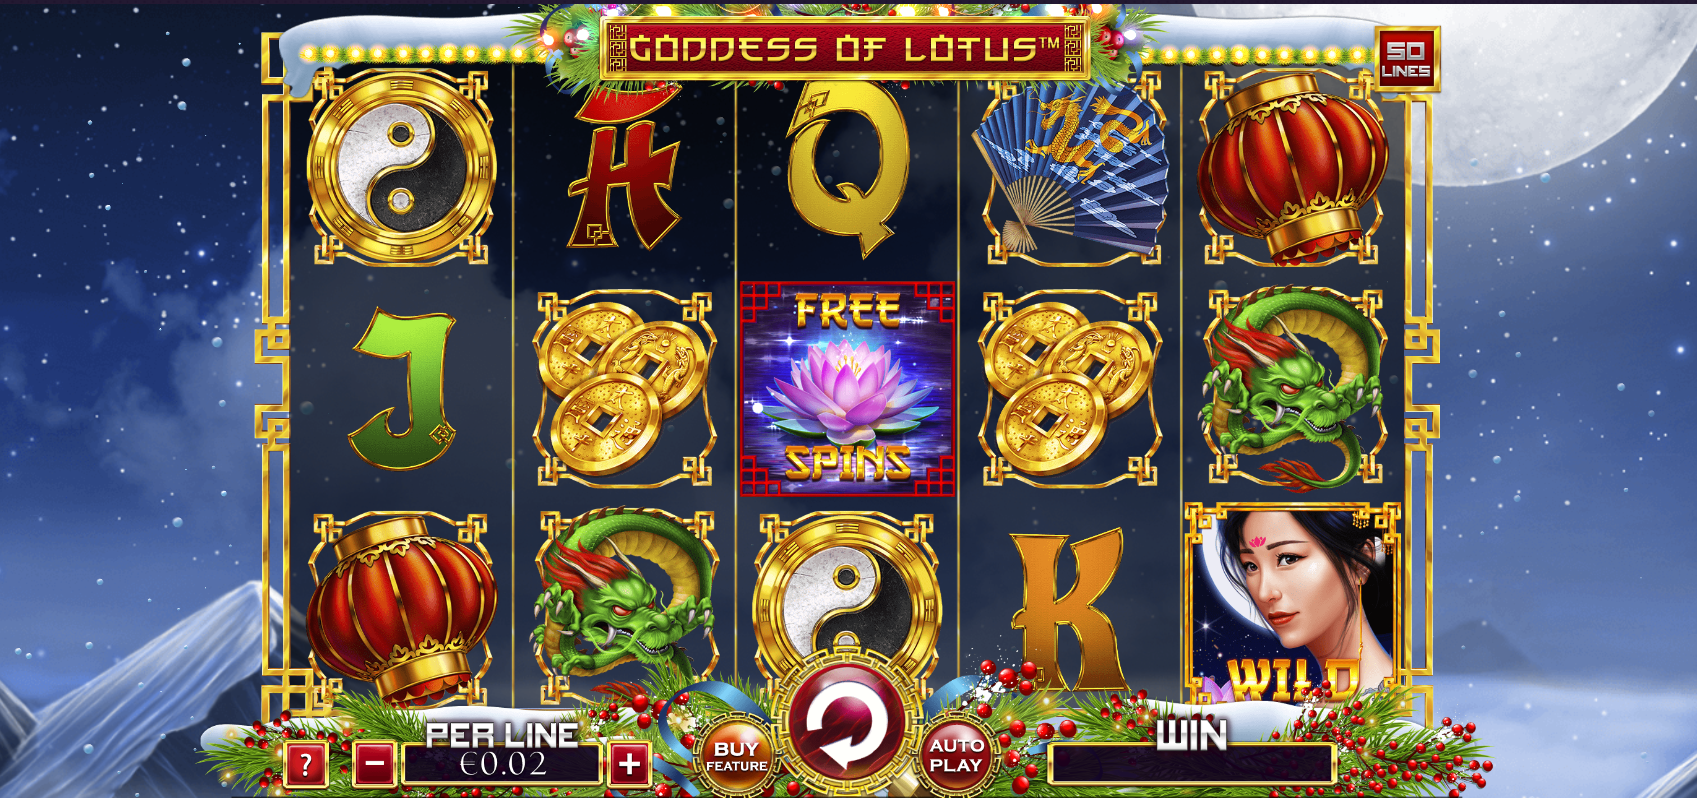 Goddess of Lotus Christmas Edition Slot Review